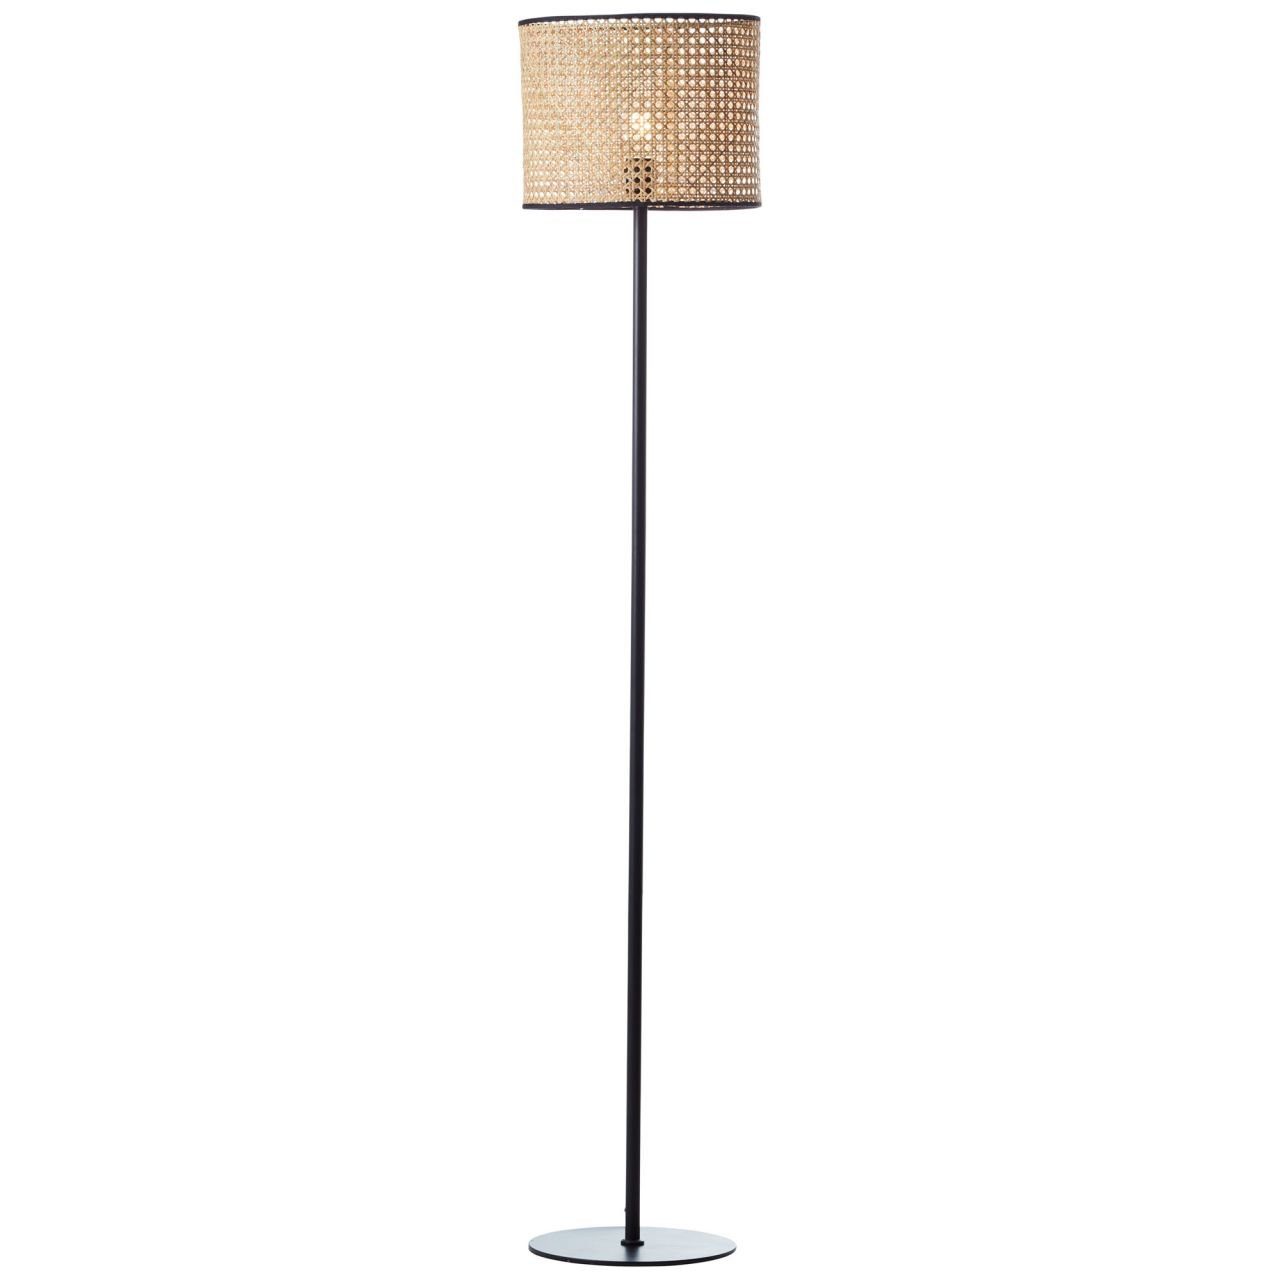 Brilliant Stehlampe Wiley, Lampe Wiley Standleuchte 1flg rattan 1x A60, E27, 60W, geeignet für | Standleuchten